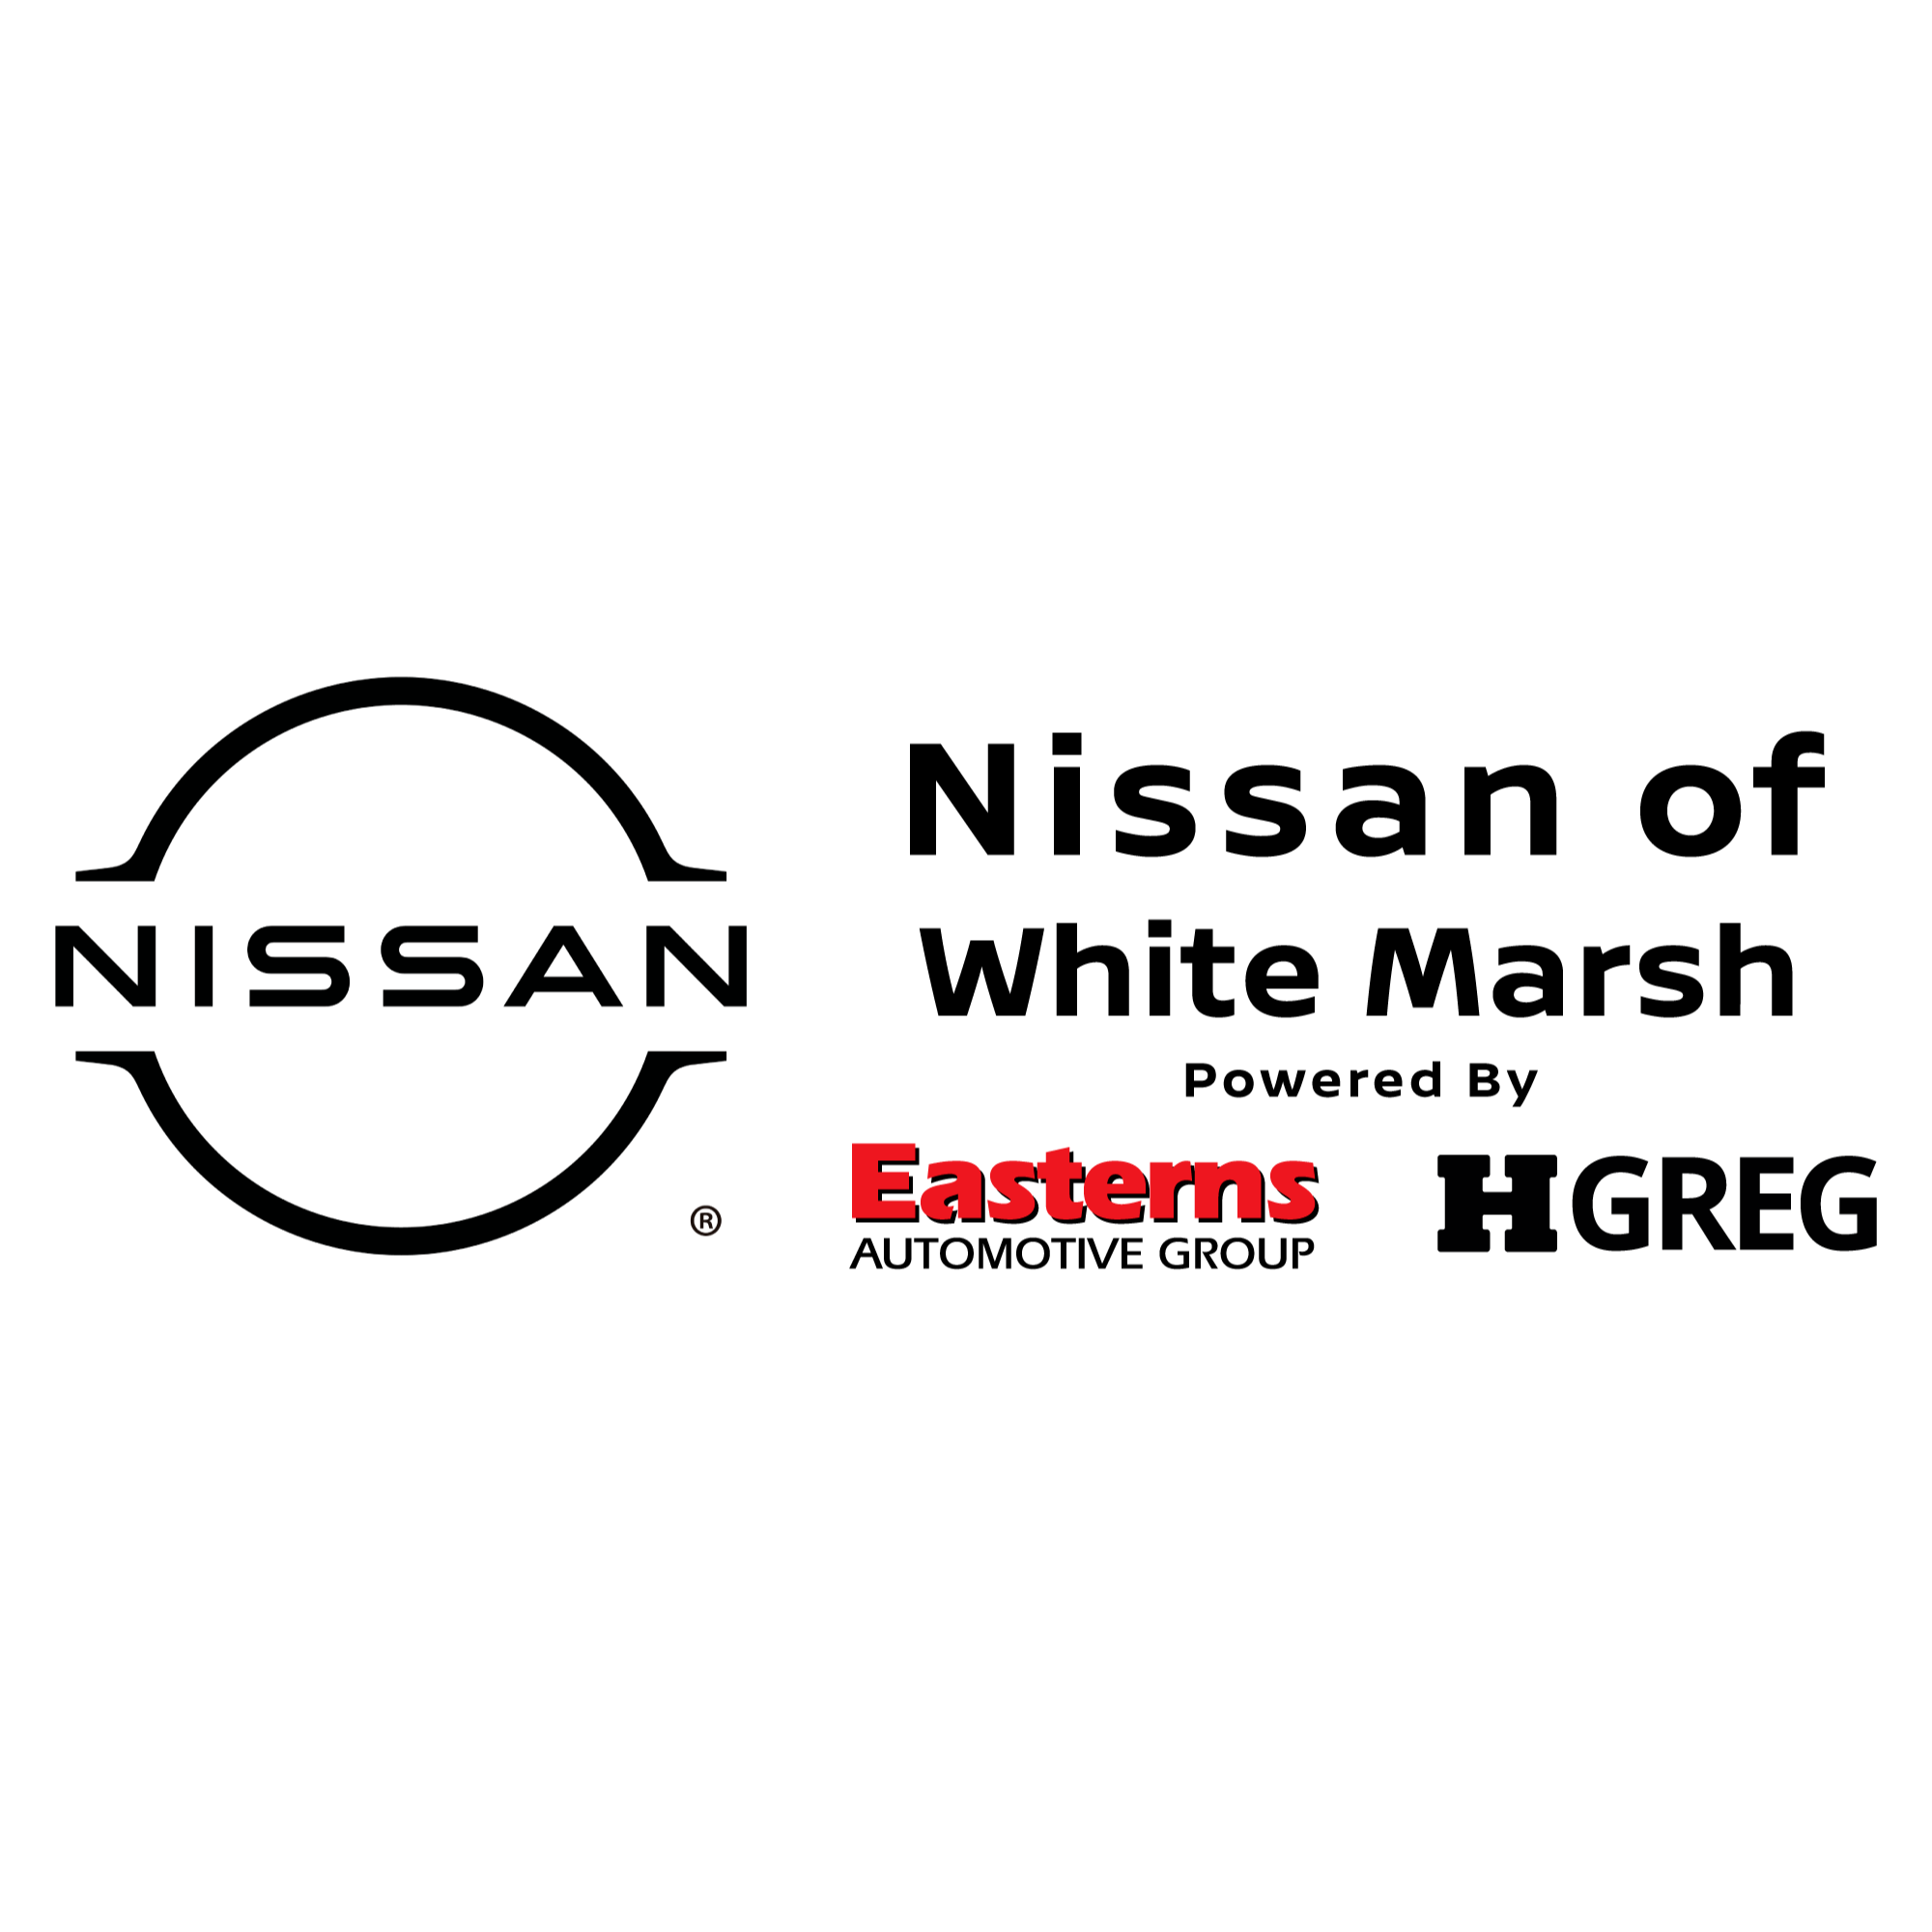 Nissan of White Marsh